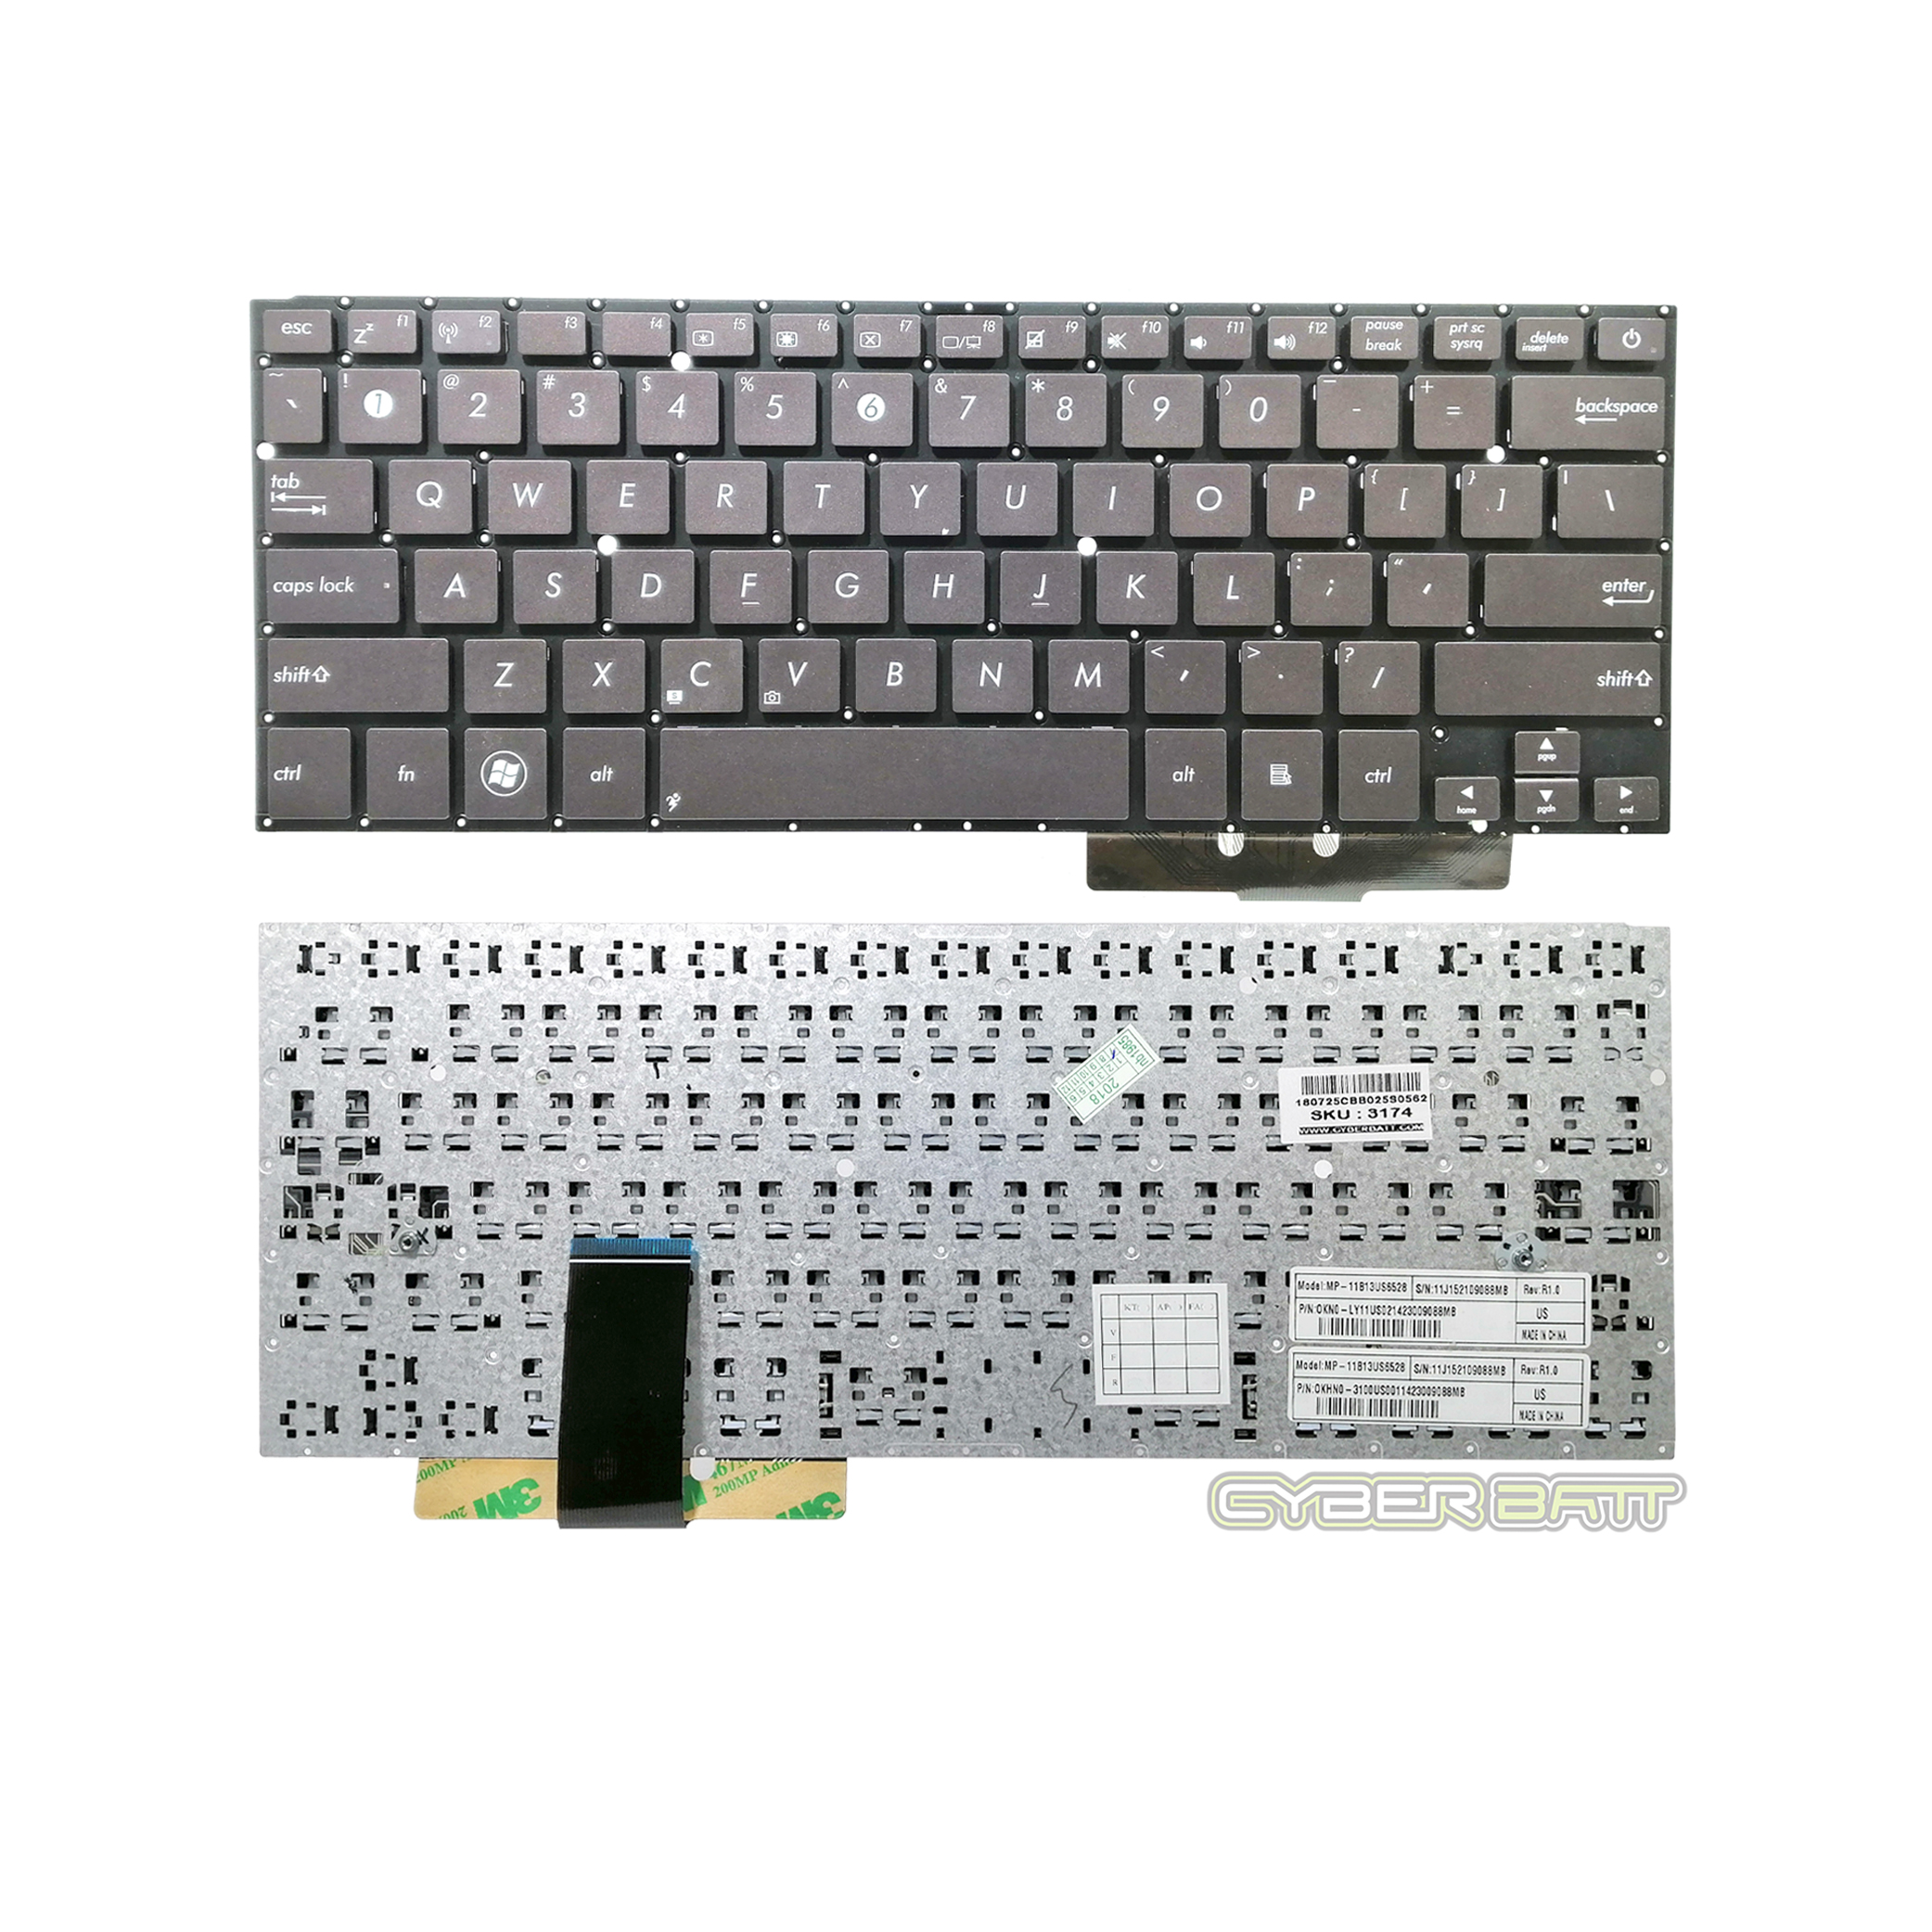 Keyboard Asus Zenbook UX31 US (Black Brown)